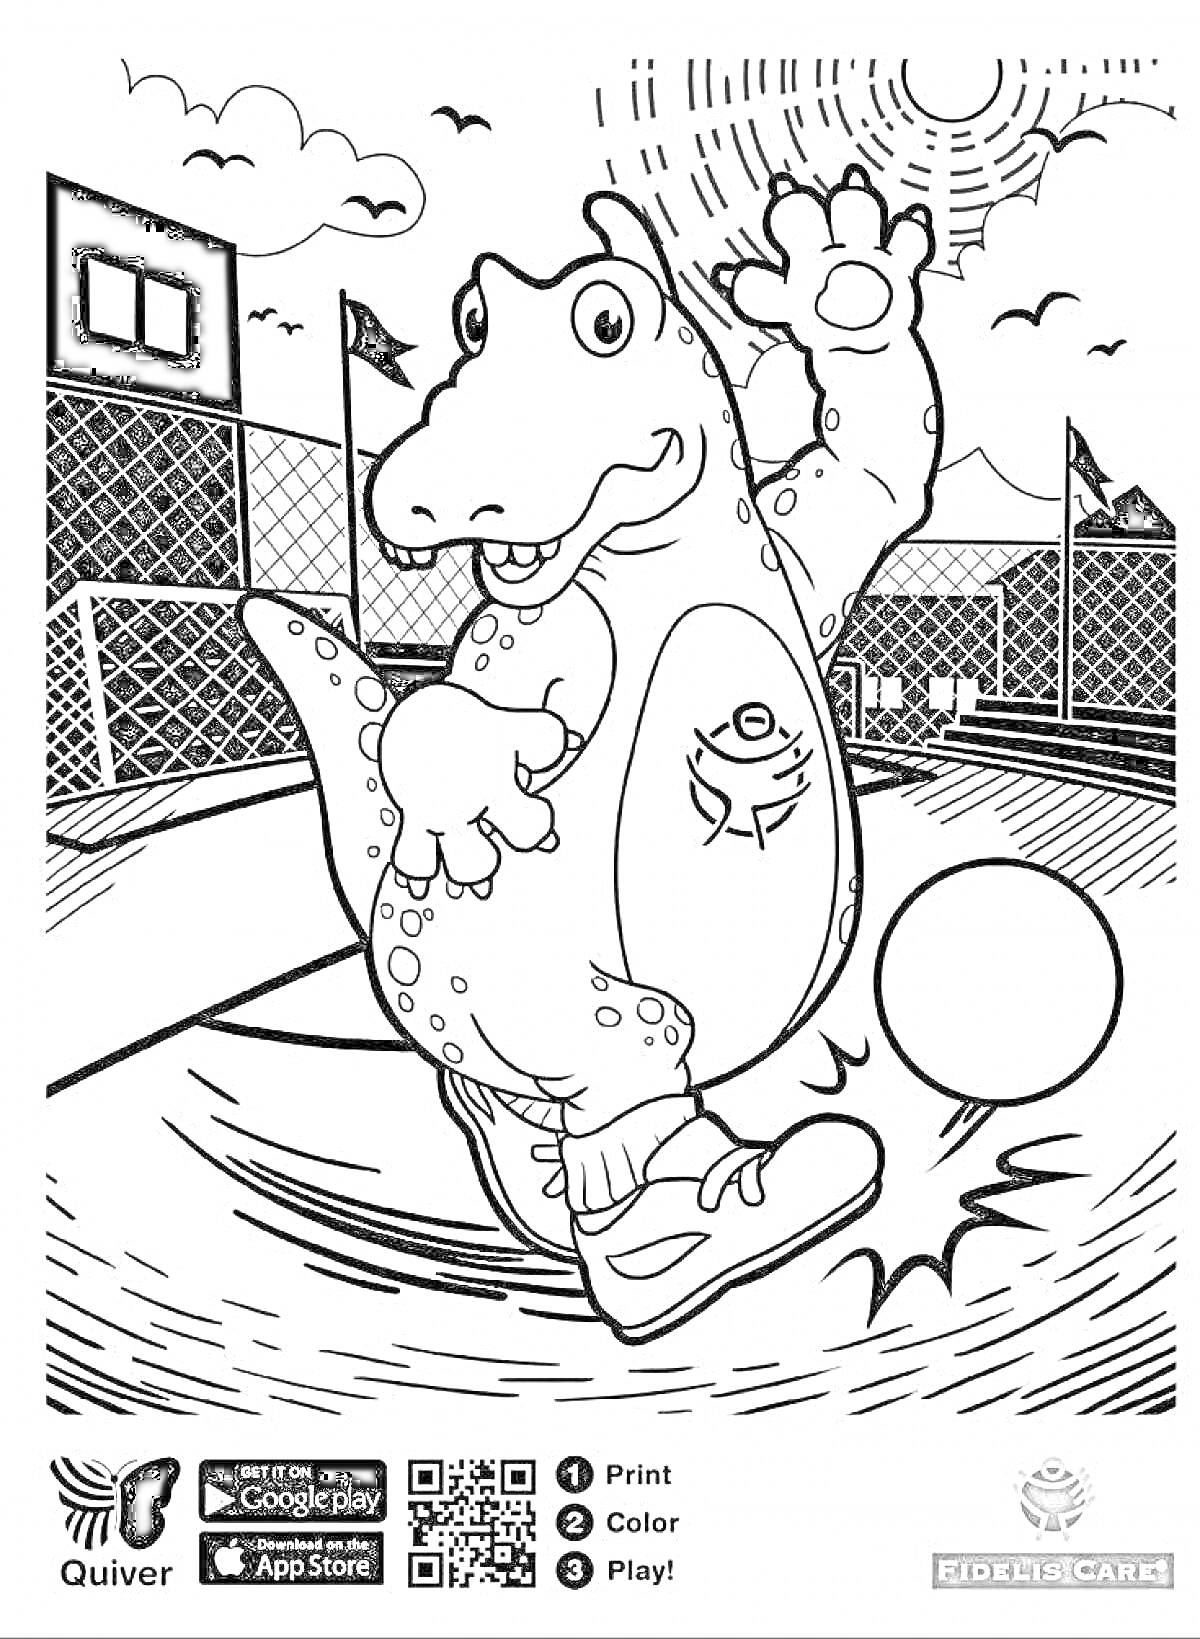 Раскраска Динозавр играет в баскетбол на площадке